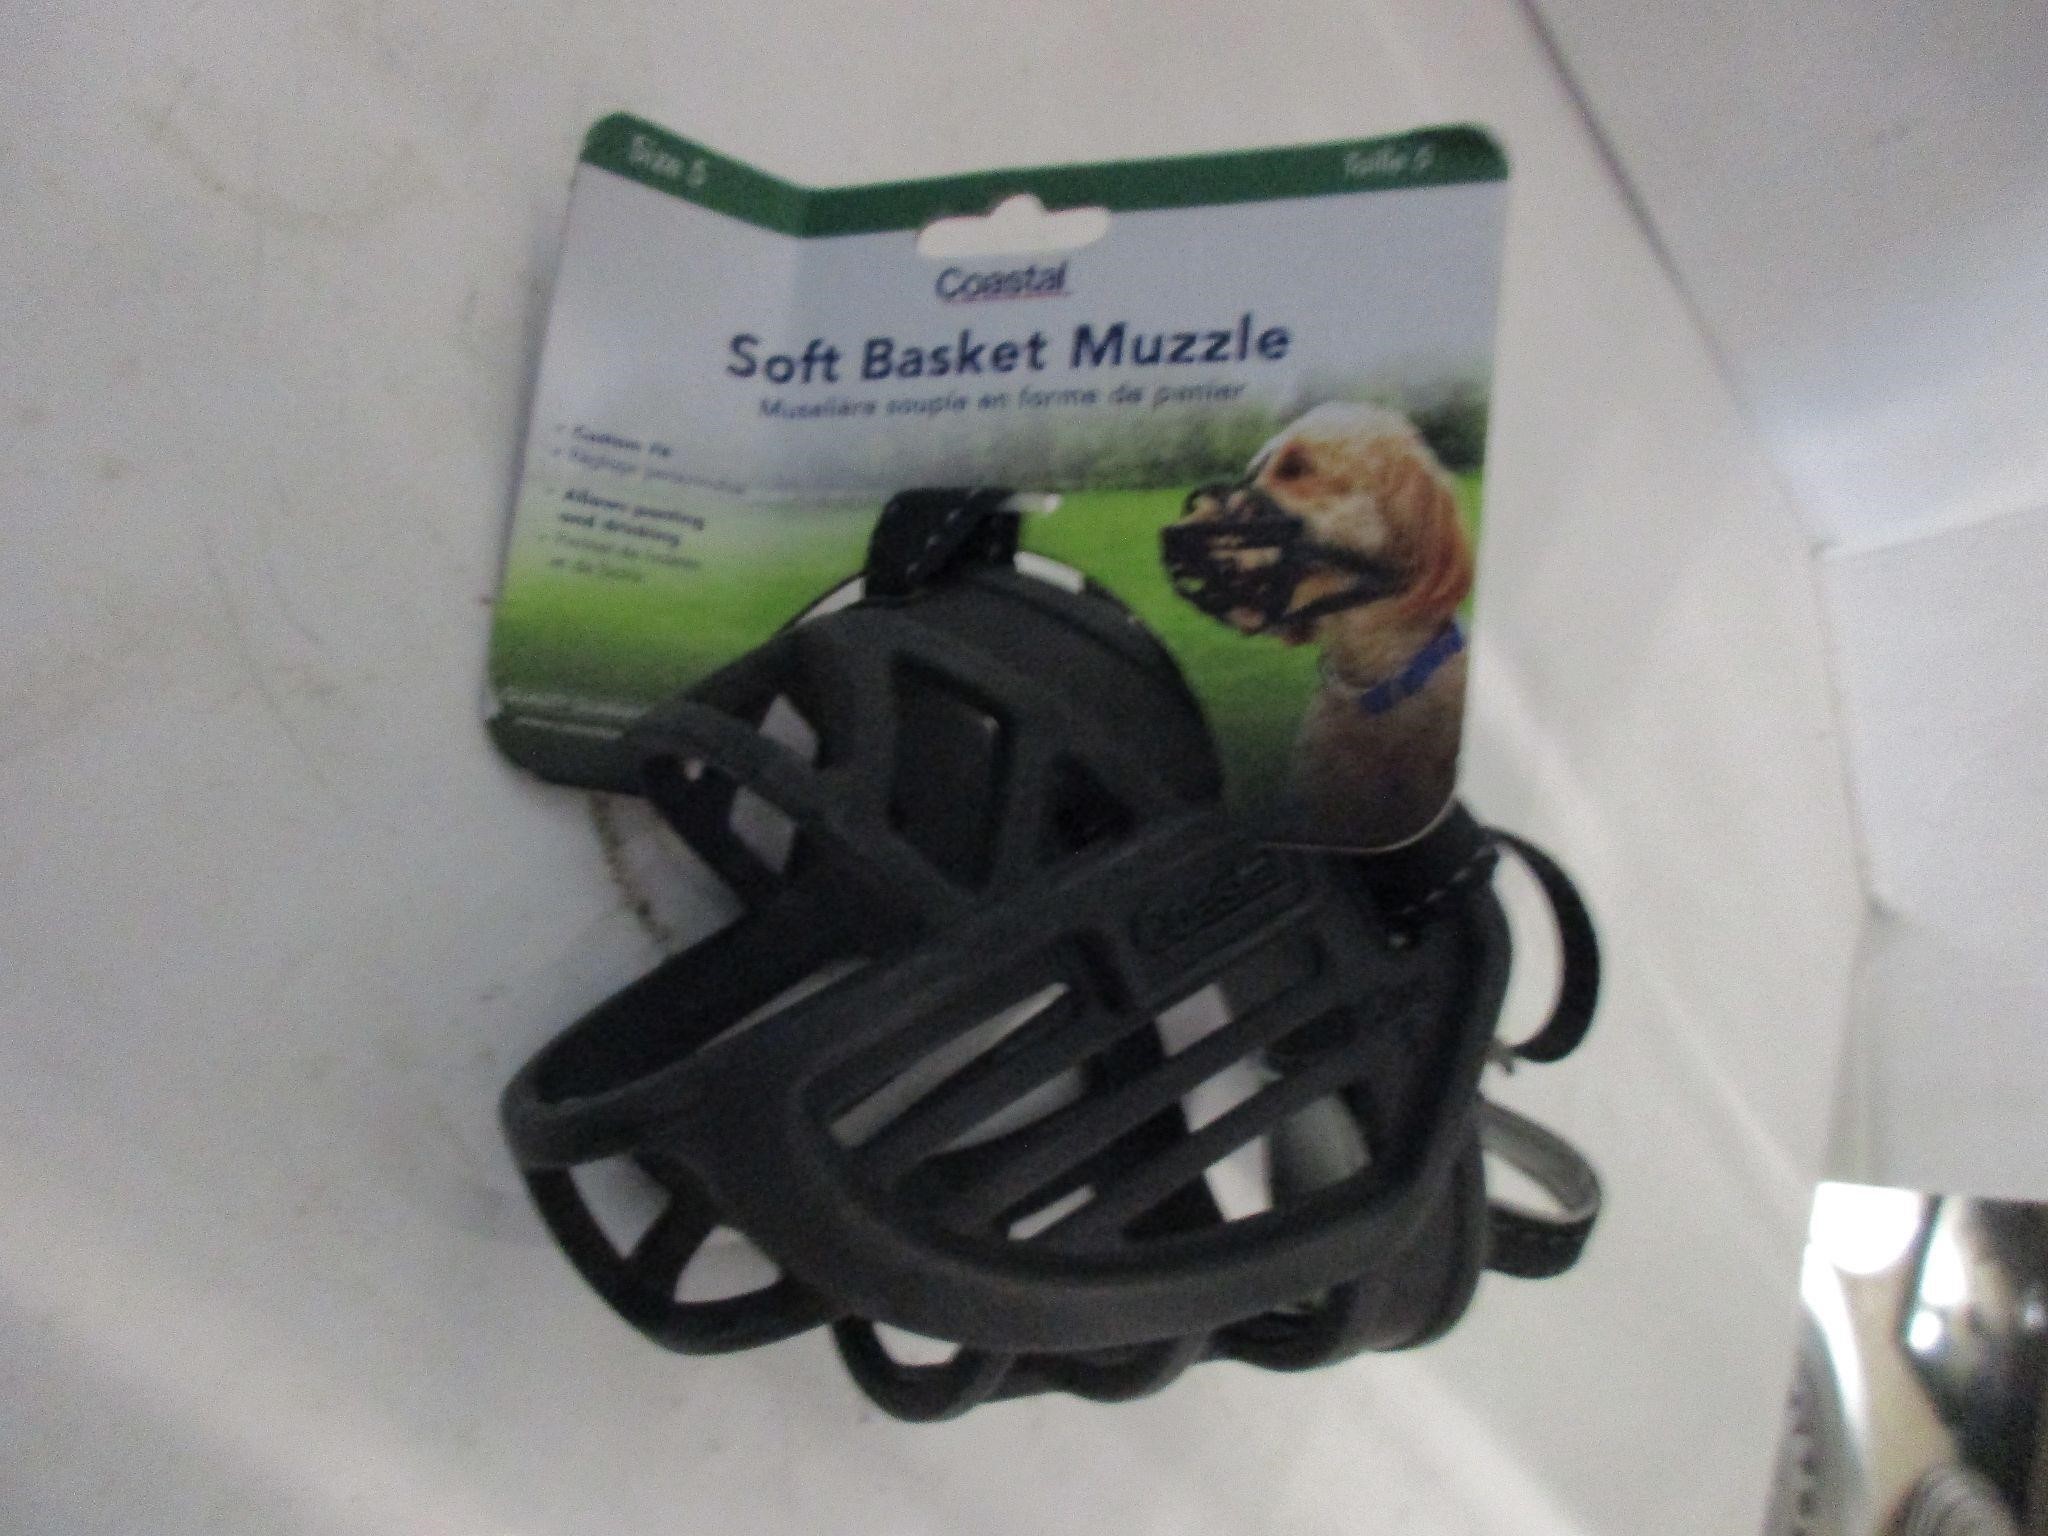 MUZZLE new soft basket muzzle size 5 for dog